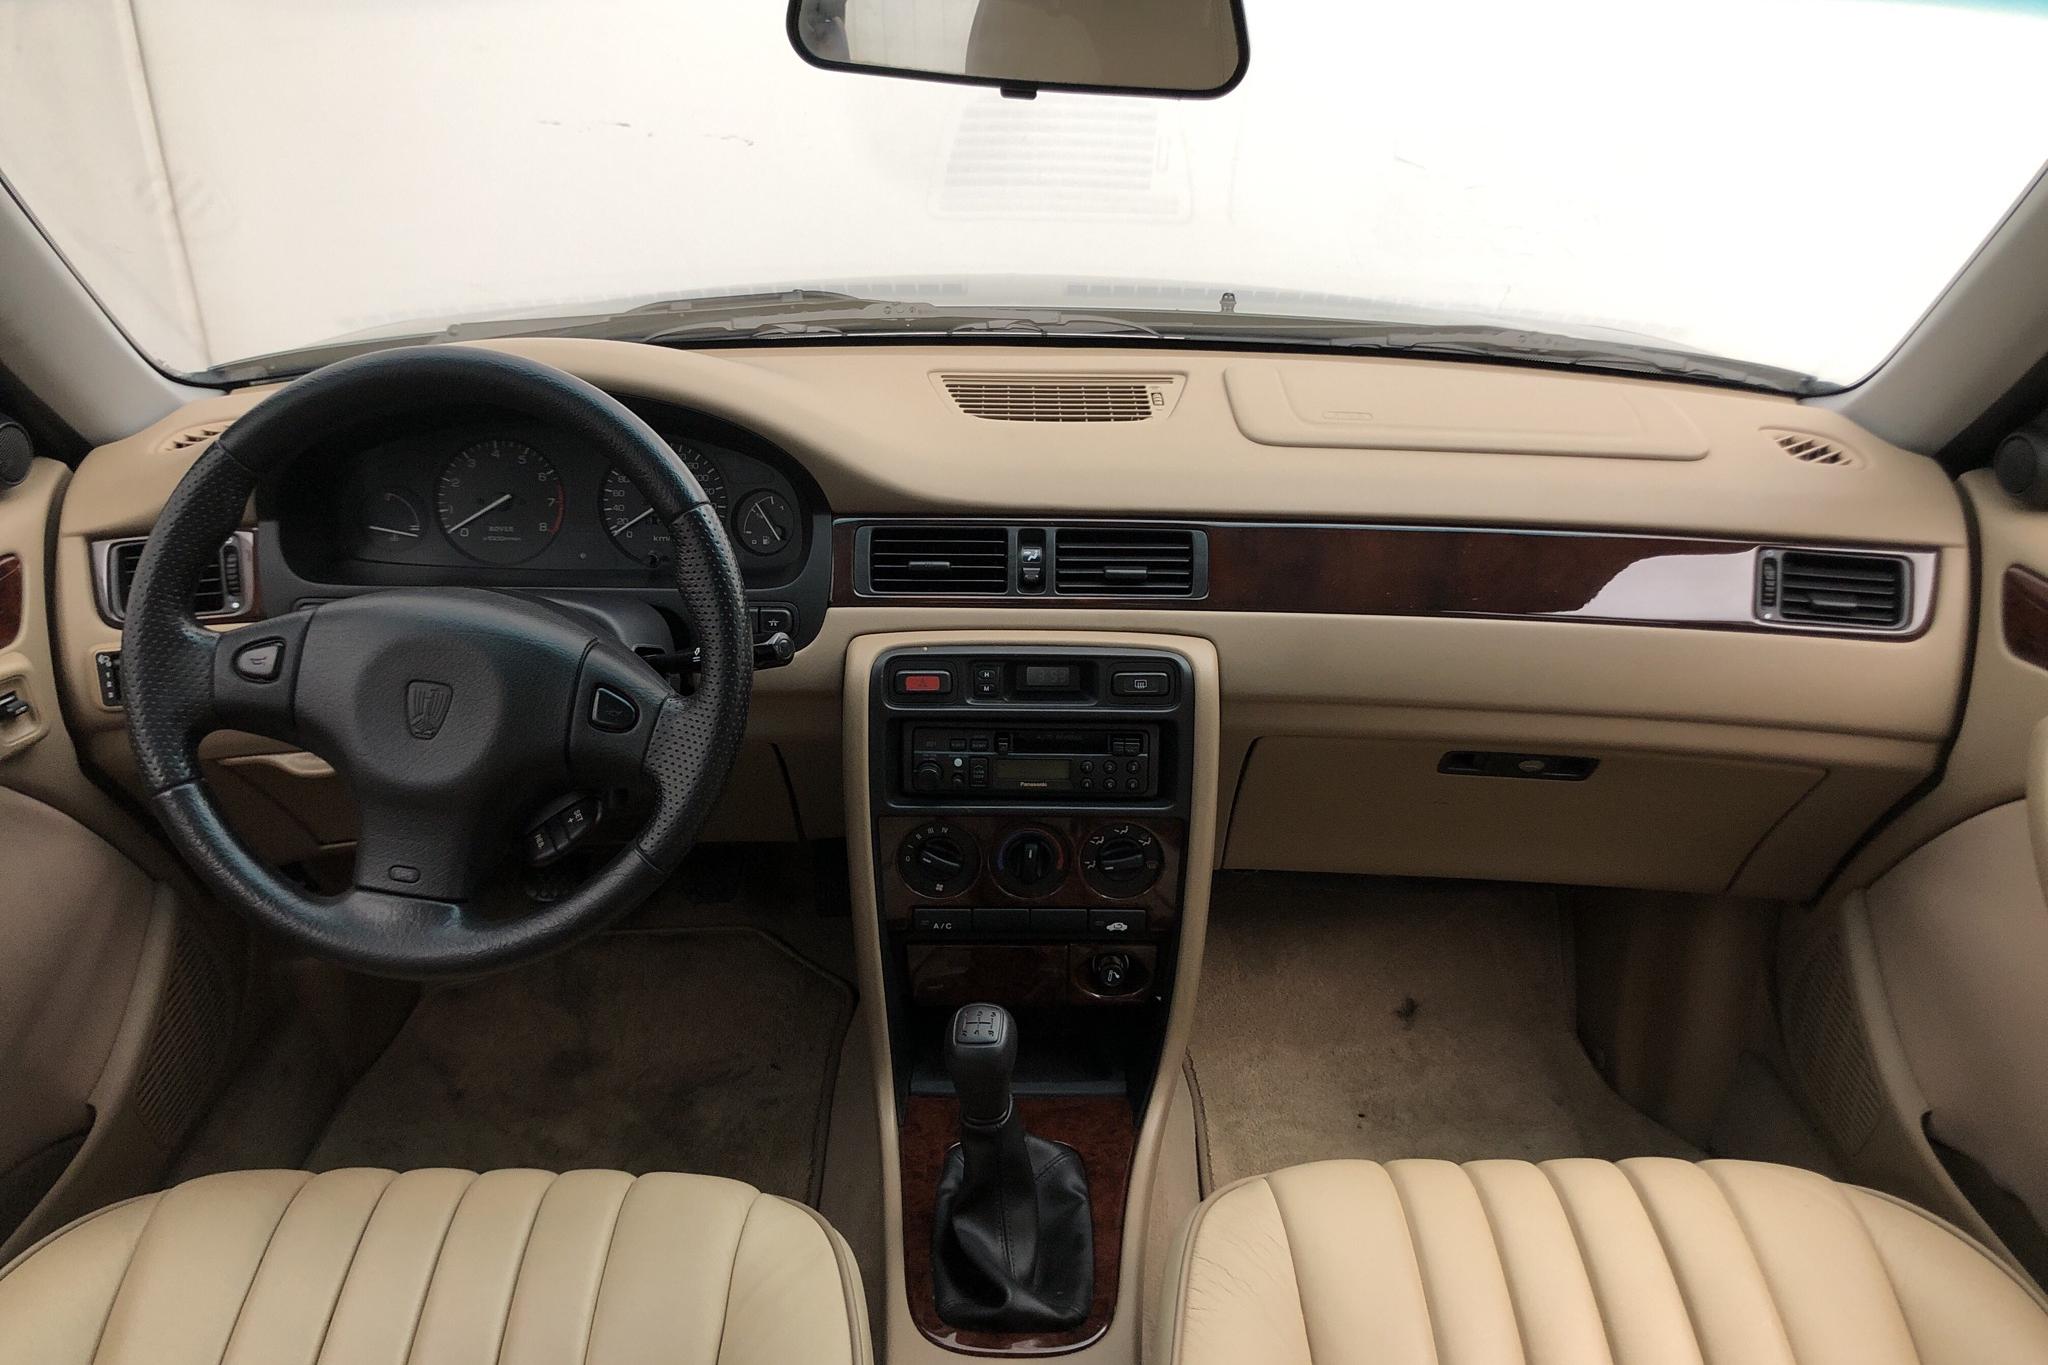 Rover 420 2.0 Sedan (136hk) - 34 930 km - Manual - green - 1998